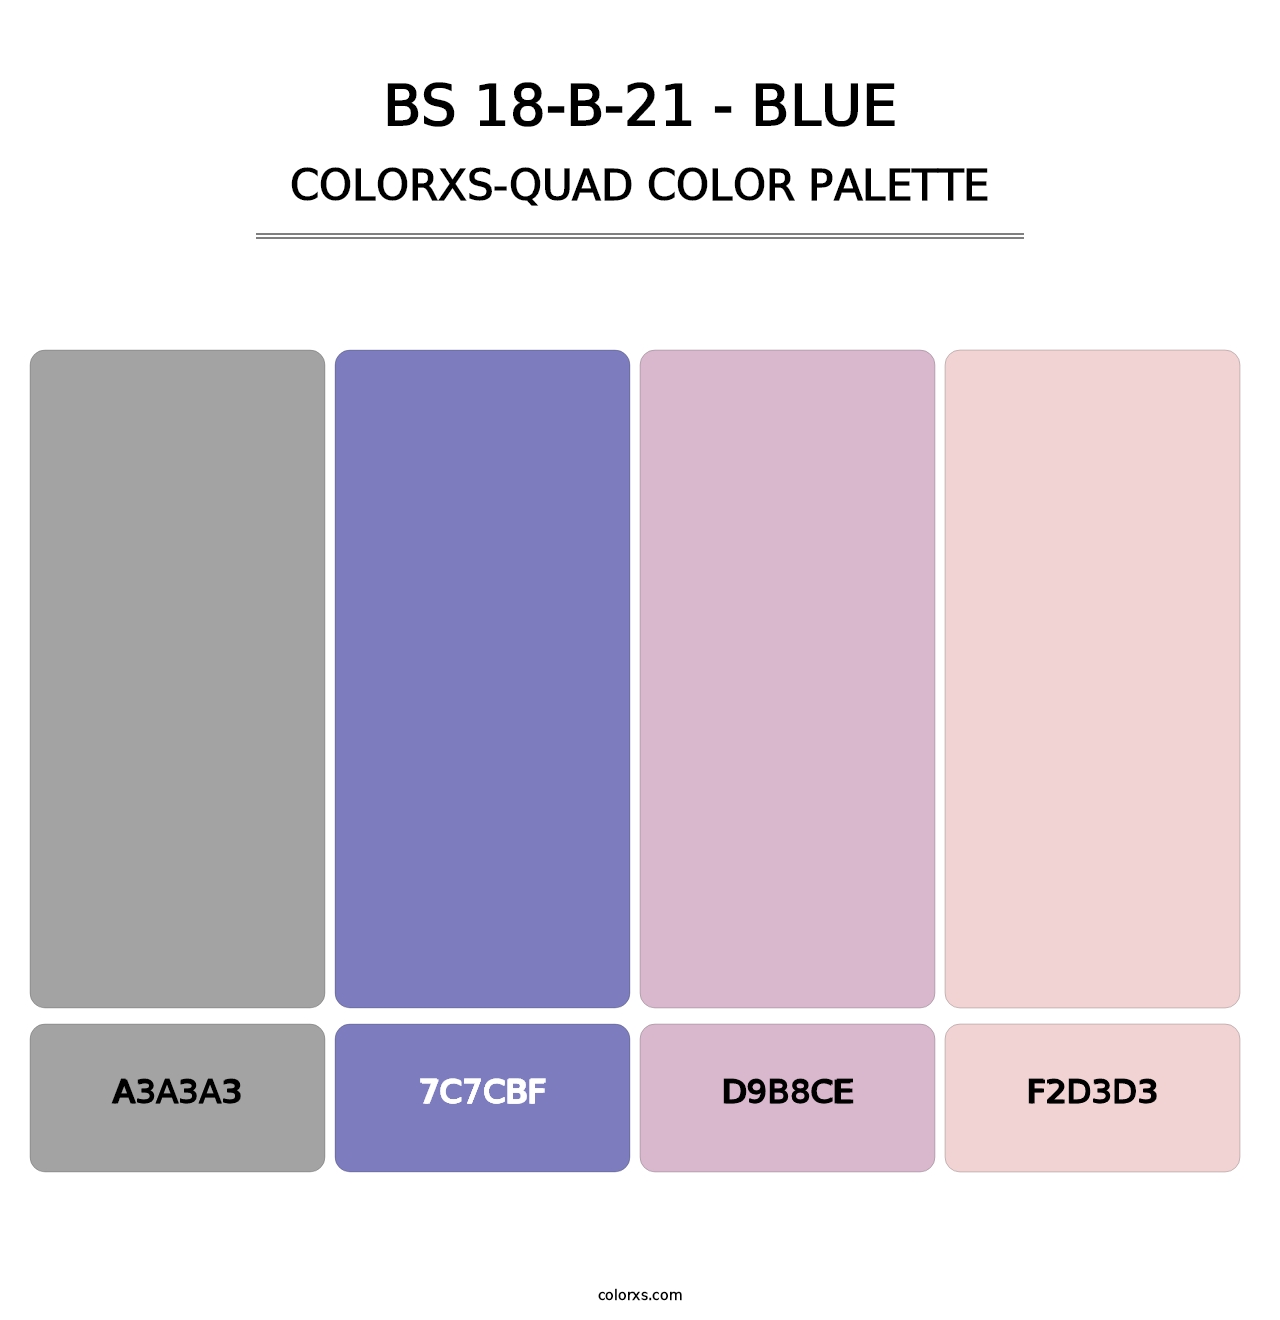 BS 18-B-21 - Blue - Colorxs Quad Palette